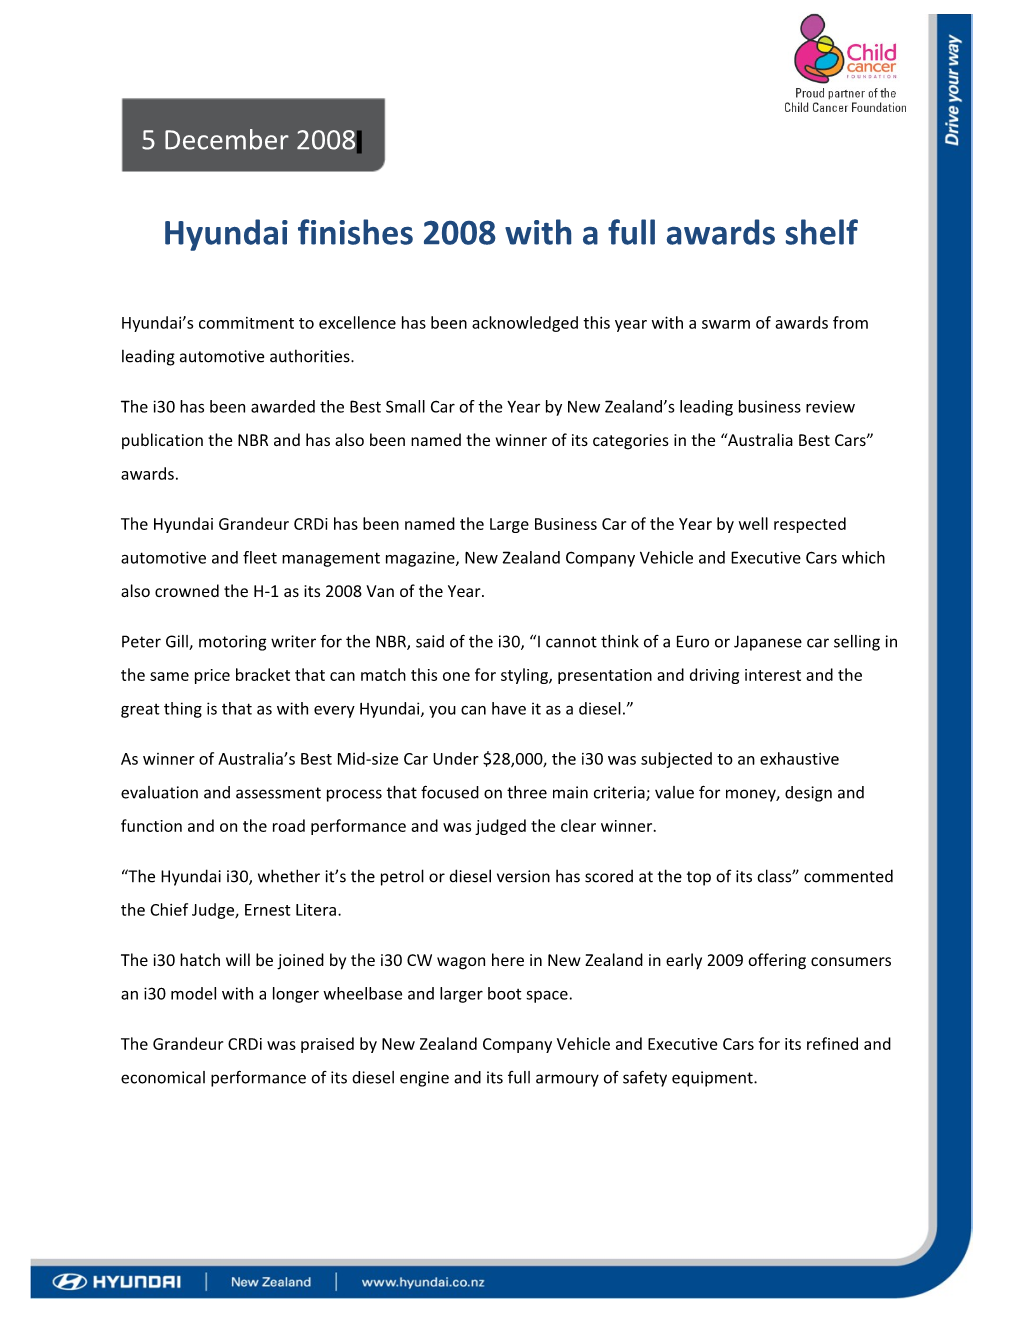 Hyundai Finishes 2008 with a Full Awards Shelf